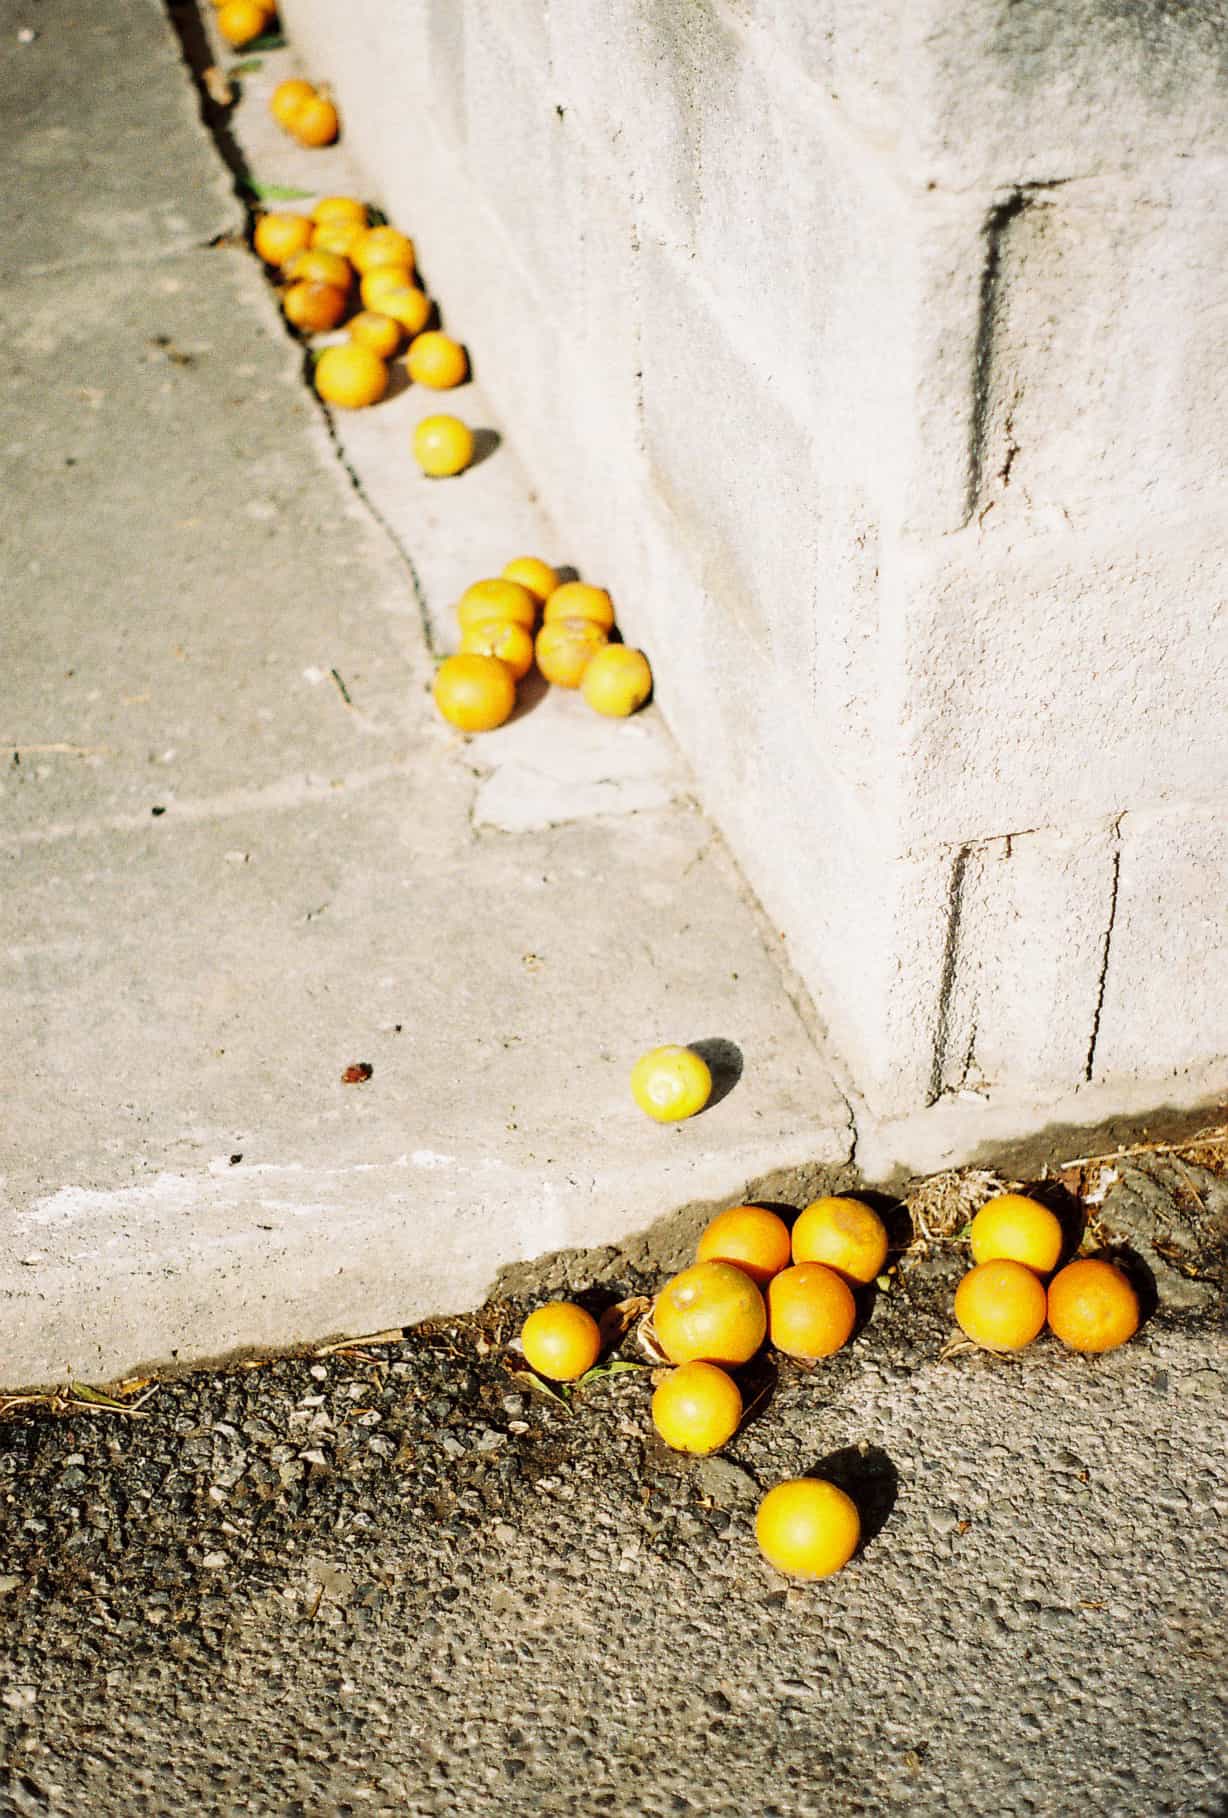 Citrus in Cyprus